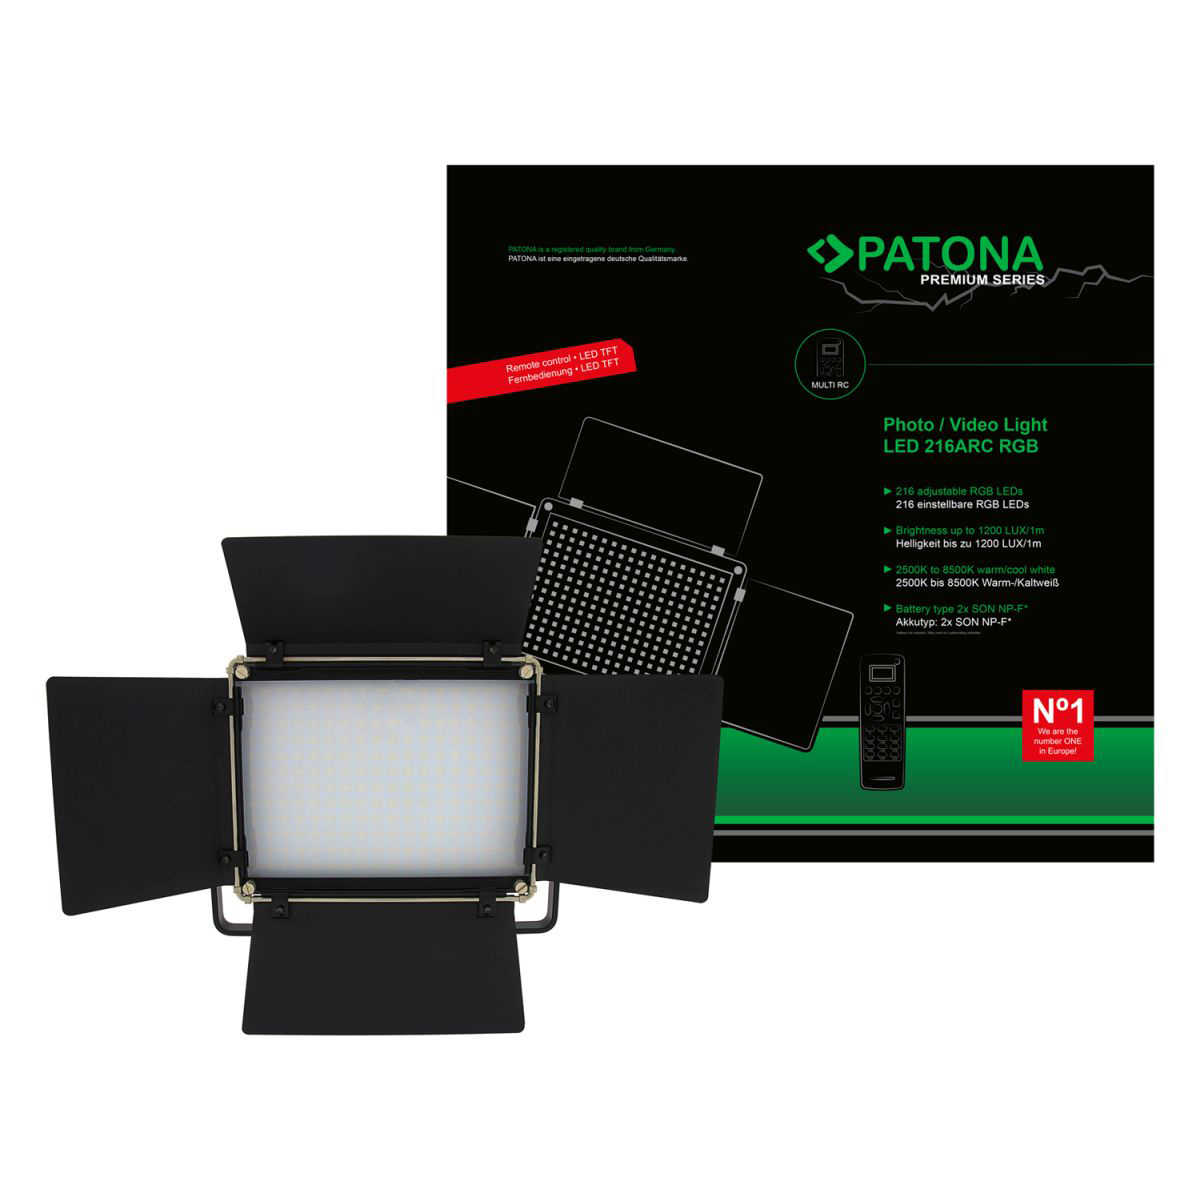 PATONA Premium LED Foto und Videolicht mit 216 einstellbaren RGB LEDs und Fernbedienung